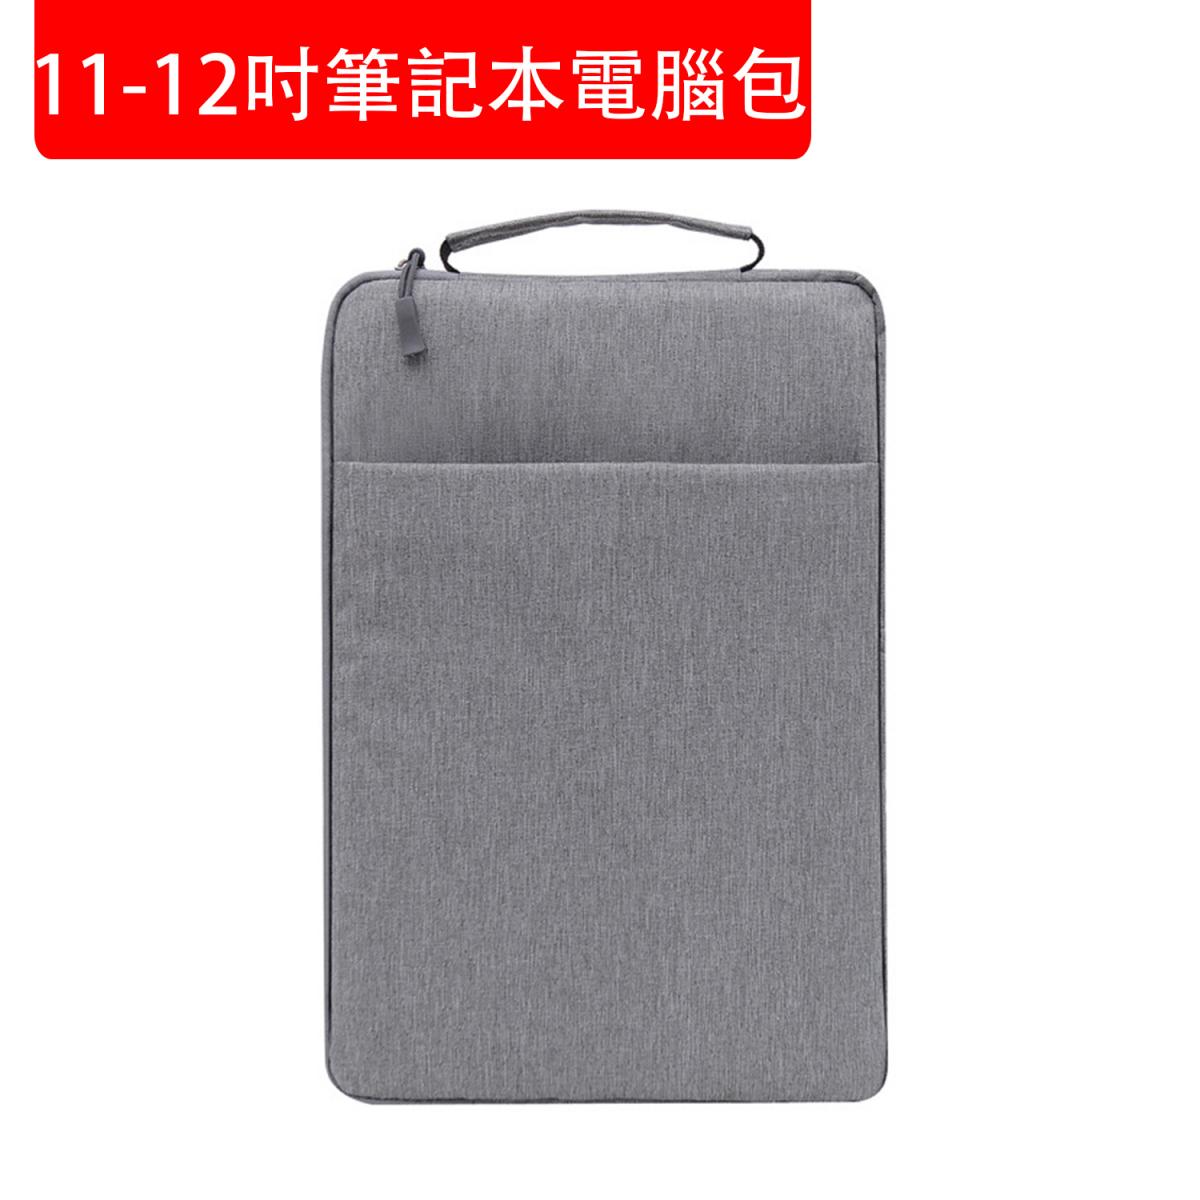 11-12吋筆記本電腦包 平板電腦袋 加絨內膽保護套 帶側兜 灰色